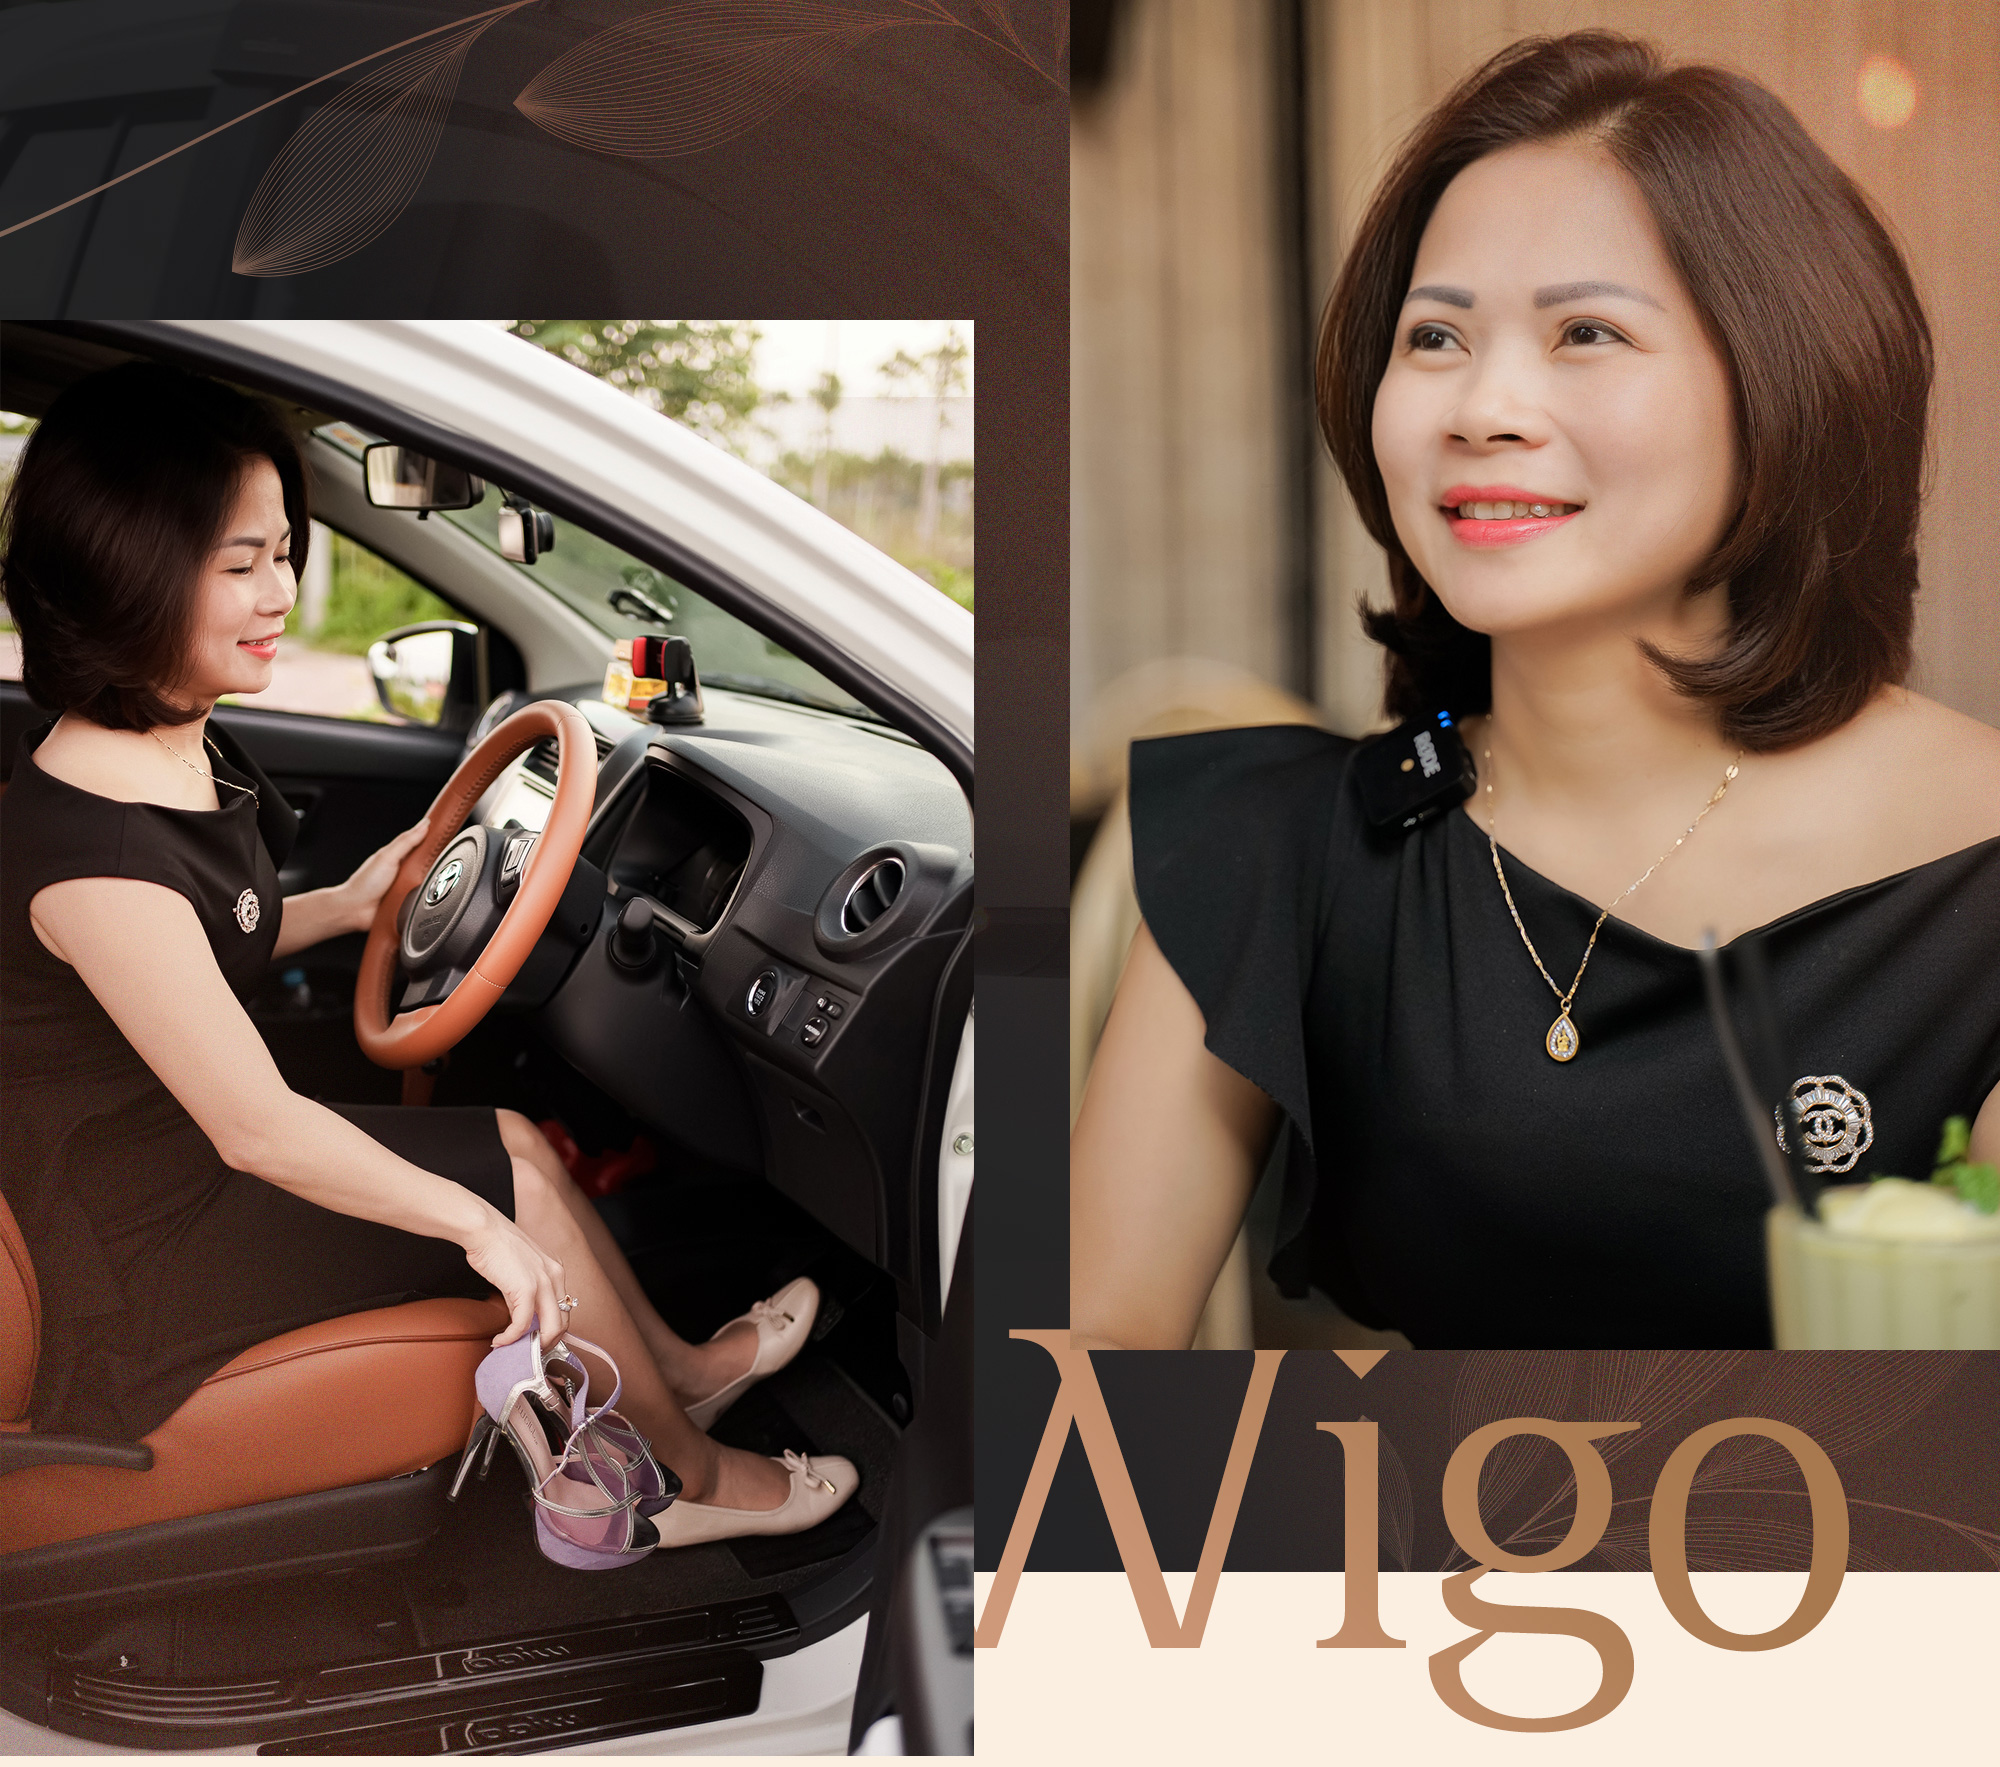 Toyota Wigo: Trợ thủ đáng tin cậy của người phụ nữ độc lập, trưởng thành và chuyện sắm ô tô riêng như cách yêu thương chính mình - Ảnh 13.